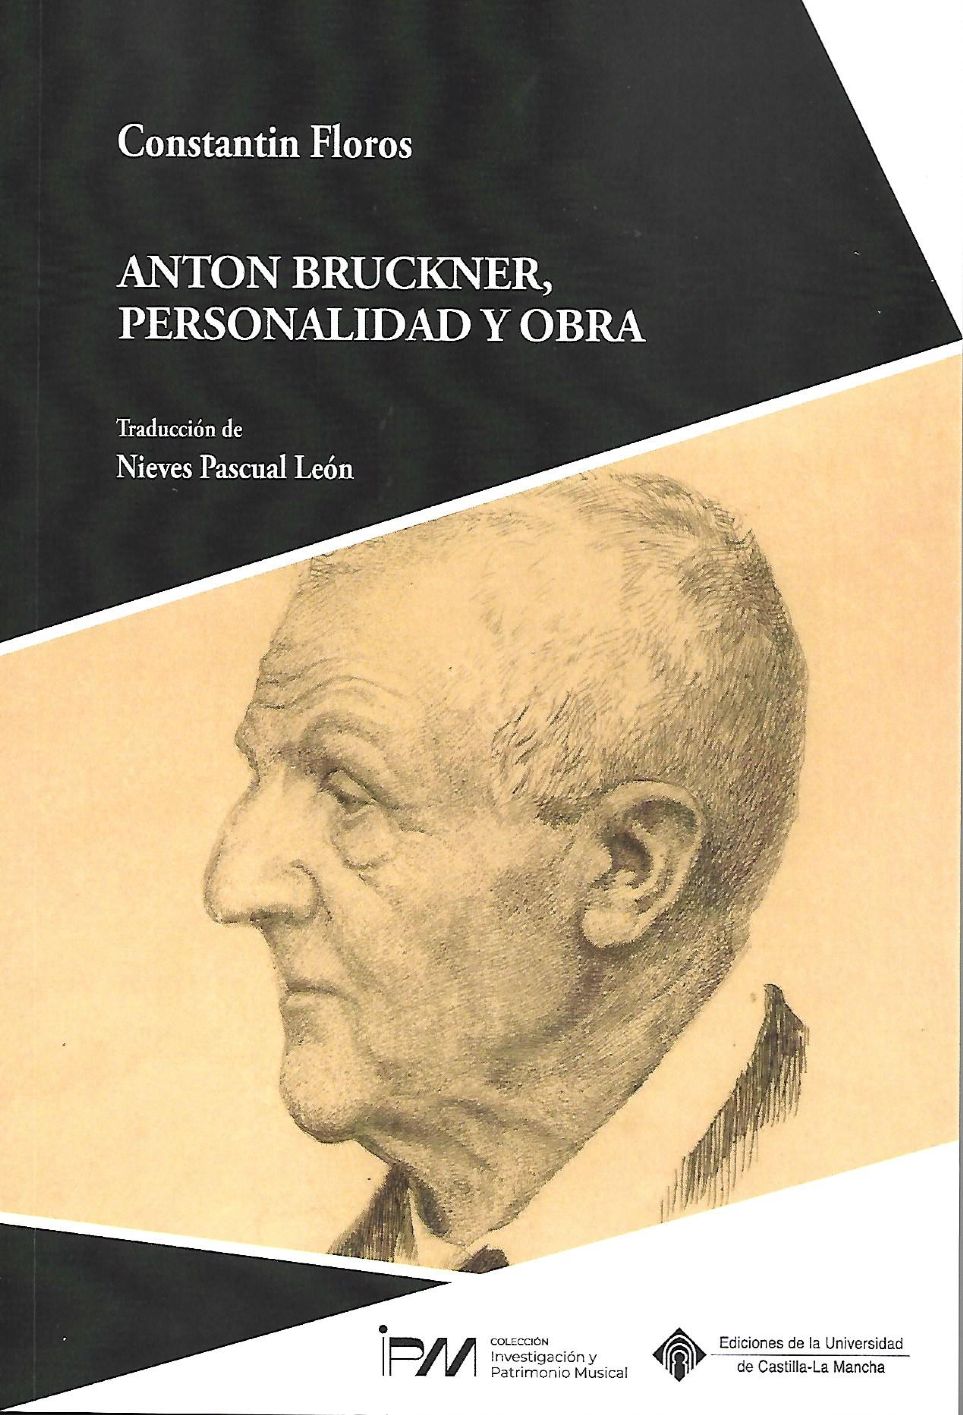 Crtica del libro Anton Bruckner, personalidad y obra de Constantin Floros